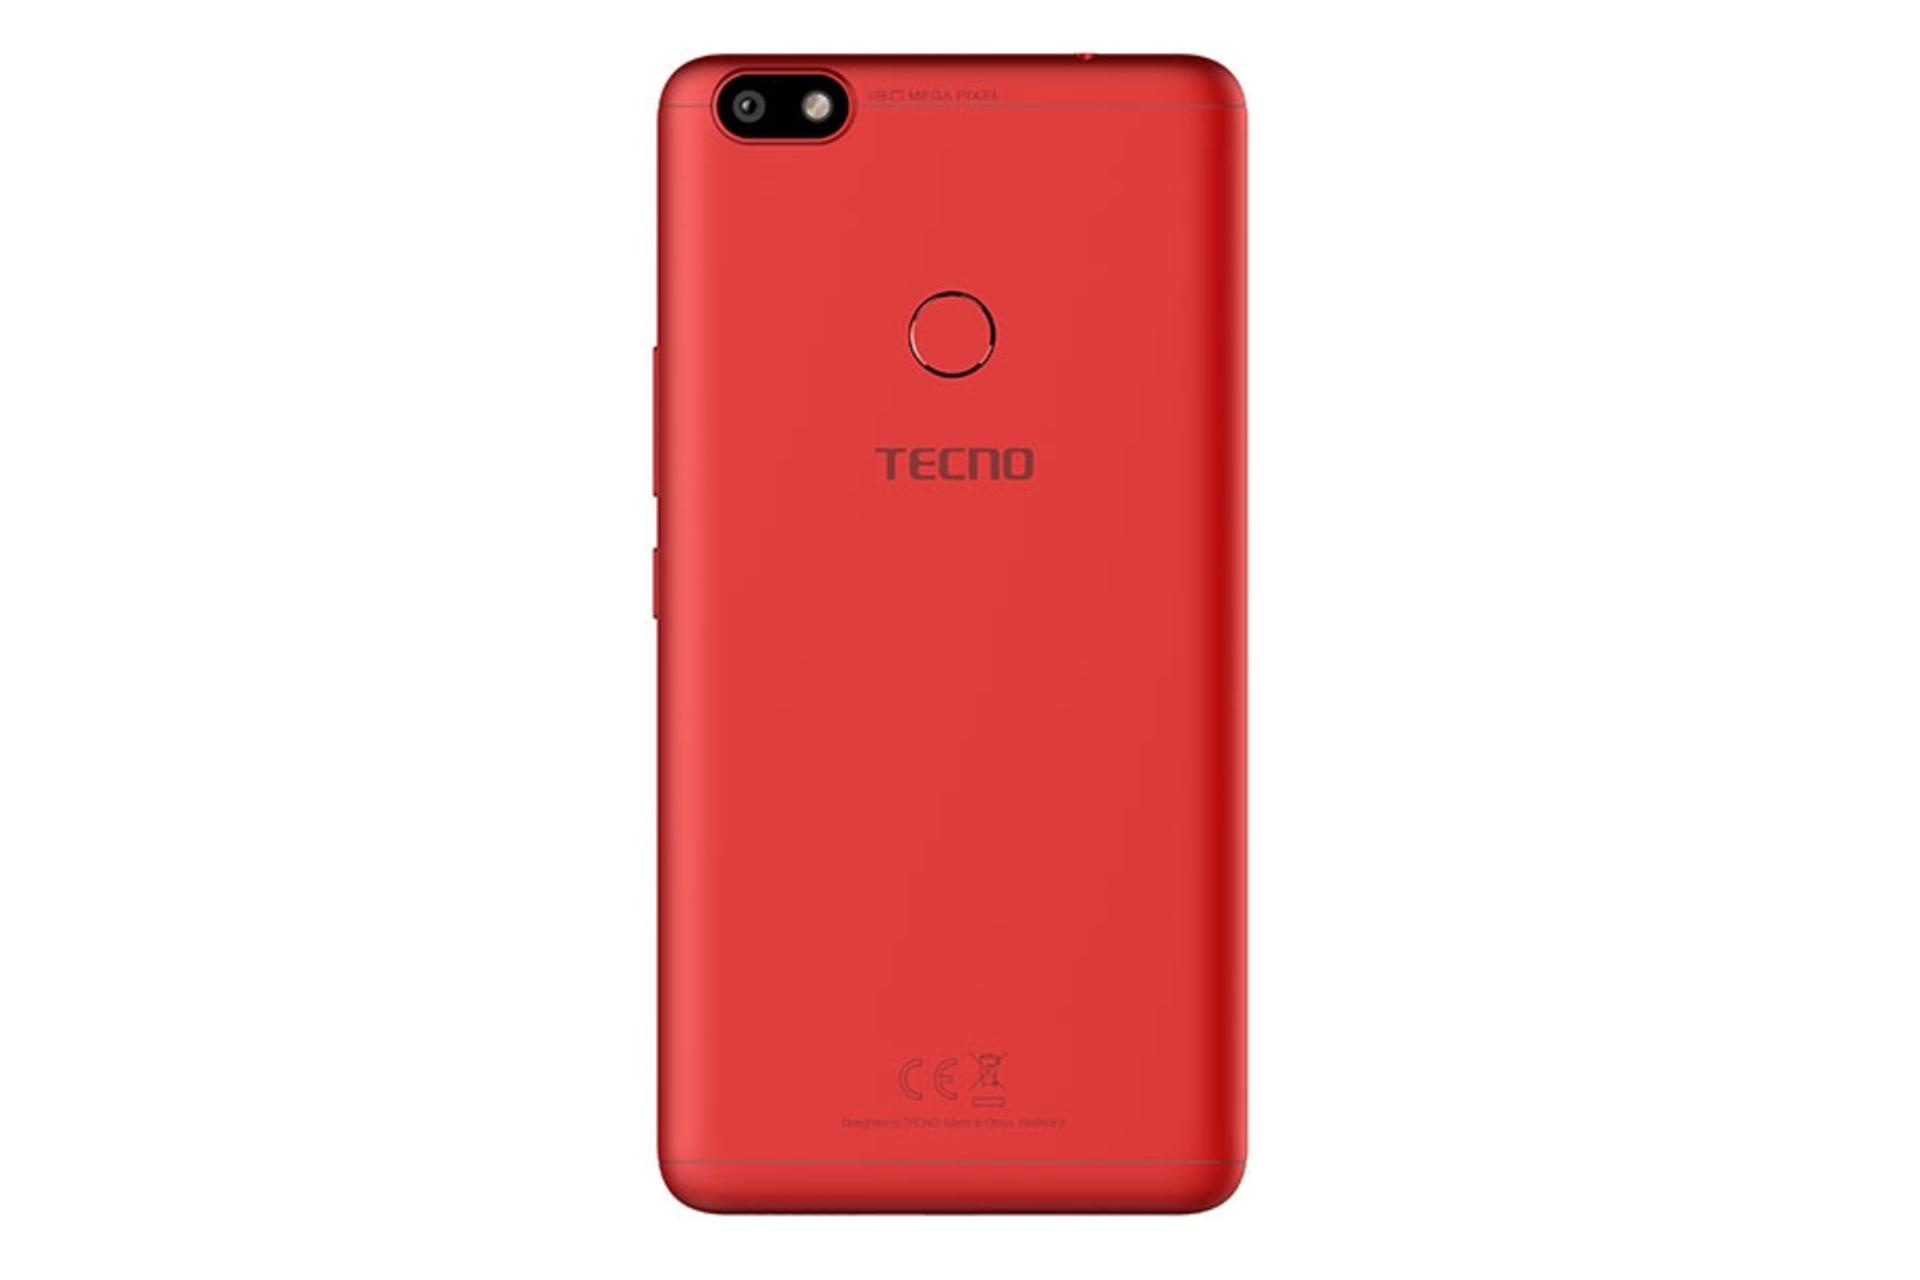 پنل پشت گوشی موبایل اسپارک پلاس تکنو Tecno Spark Plus قرمز